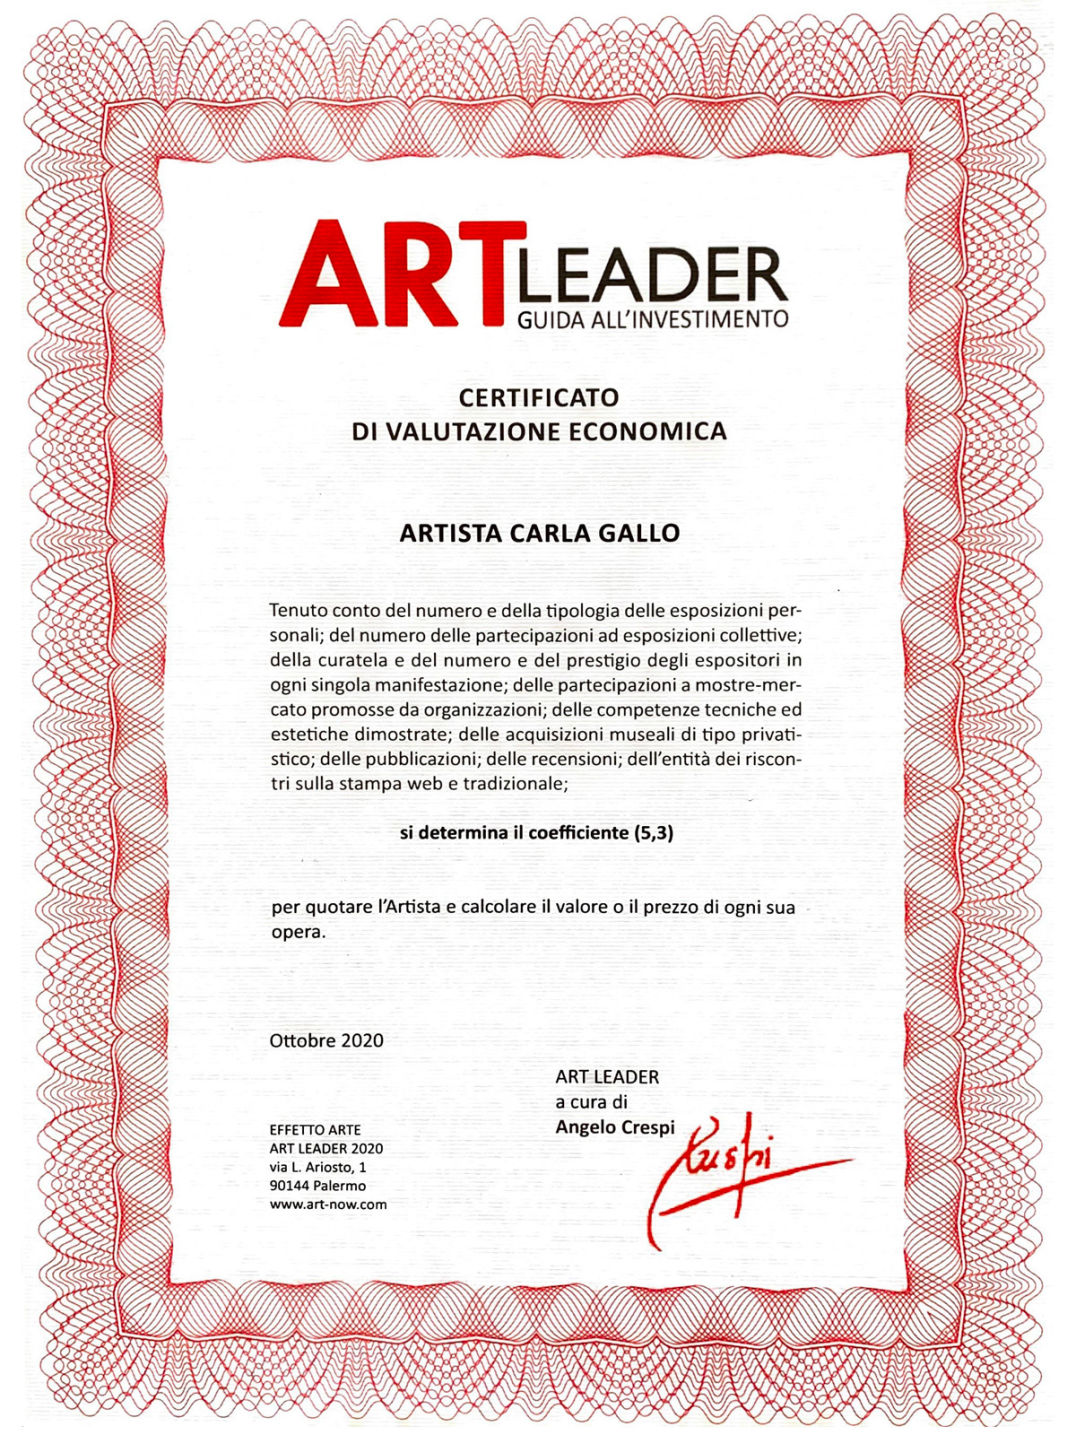 Art Leader - Guida all'Investimento - Certificato di Valutazione Economica - Carla Gallo